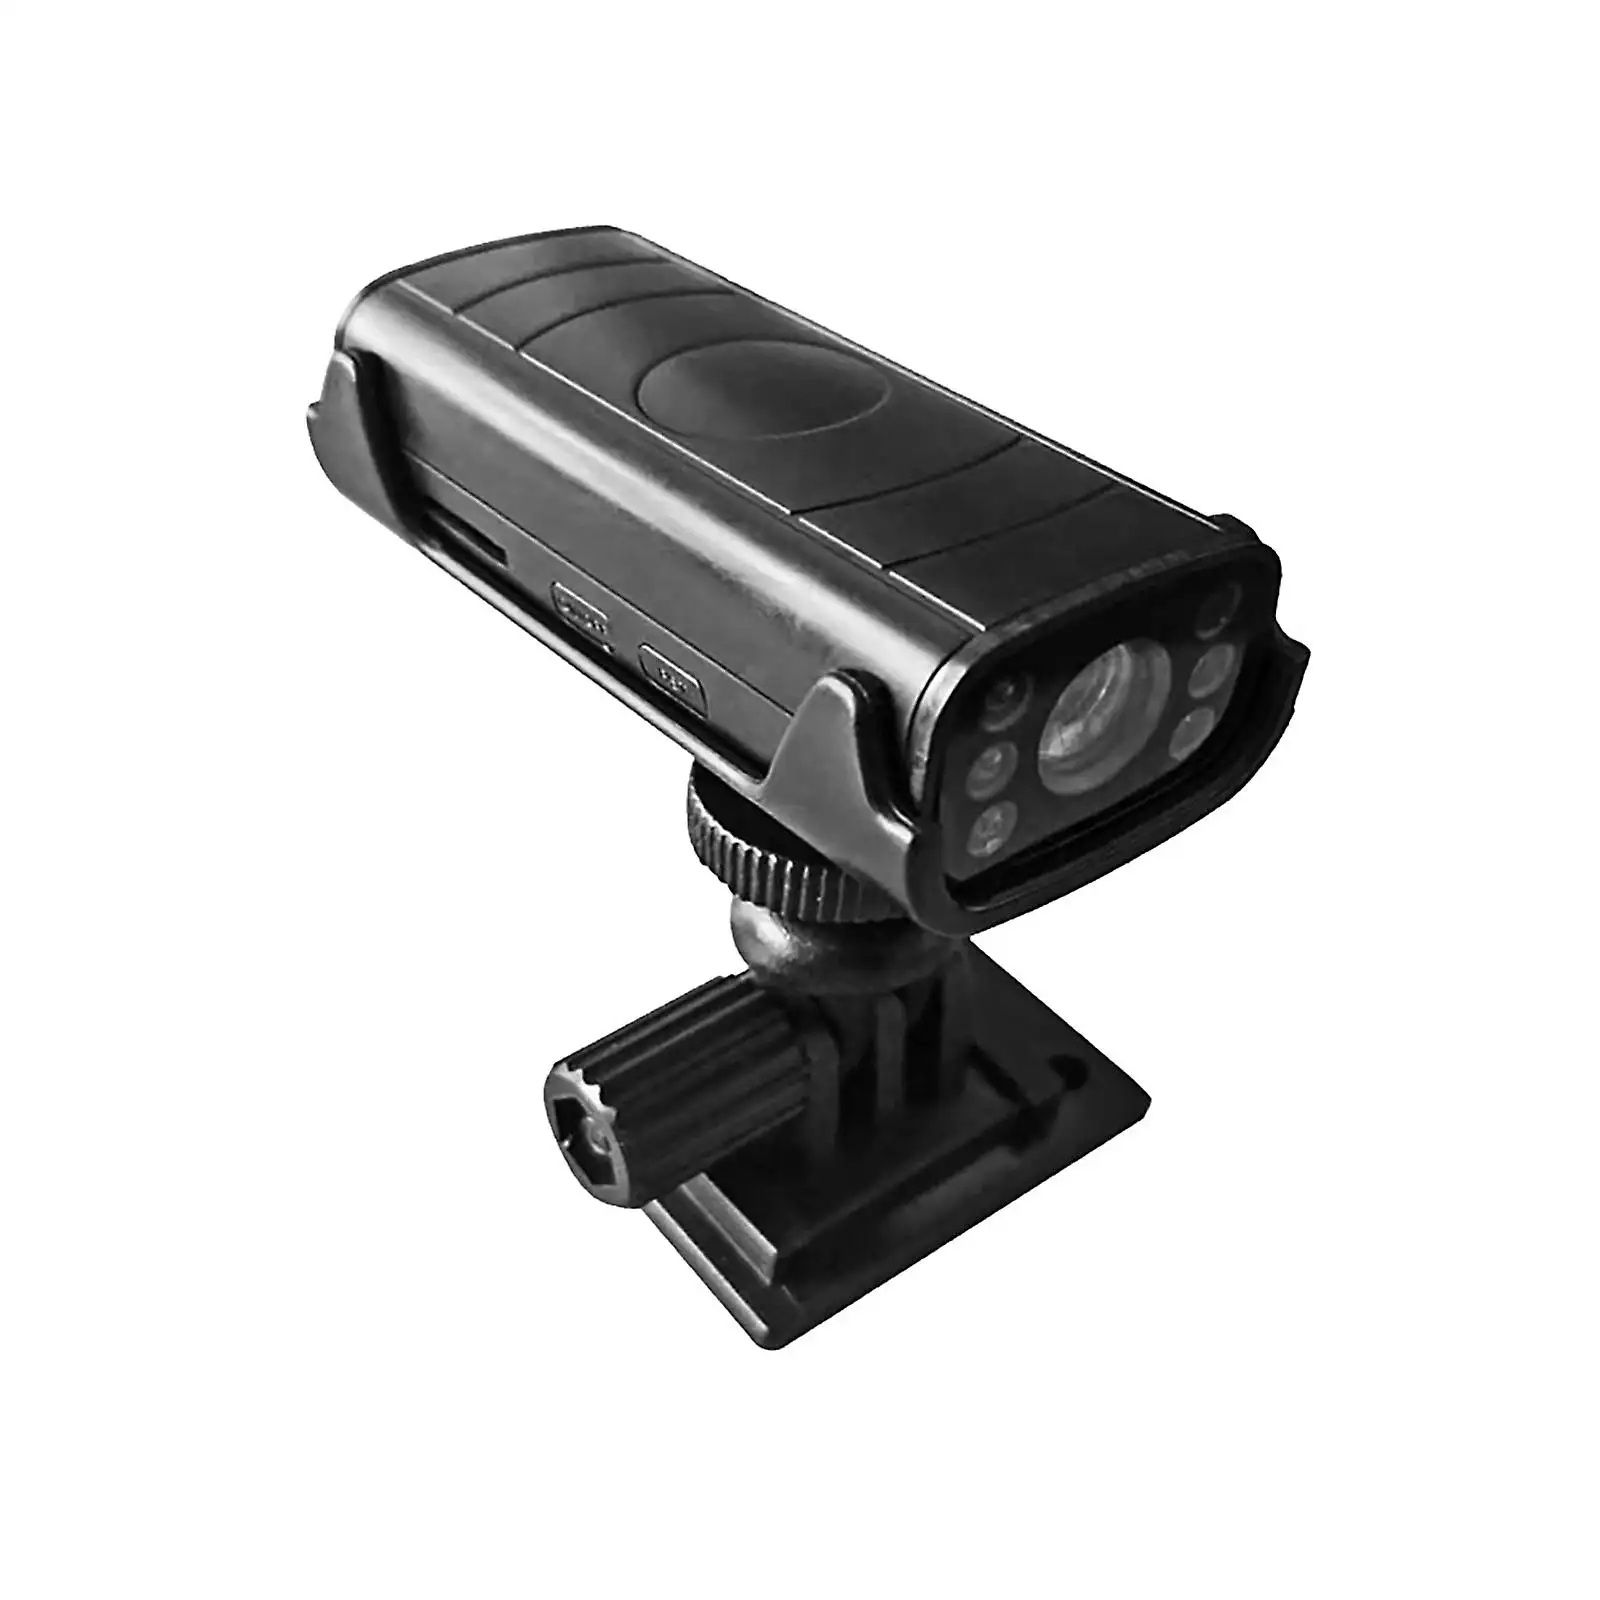 मिनी बुलेट वायरलेस डीवी स्पोर्ट्स कैमरा 1080पी एचडी इंडोर आउटडोर सस्ती कीमत होम सिक्योरिटी वीडियो कैमरा बैटरी के साथ